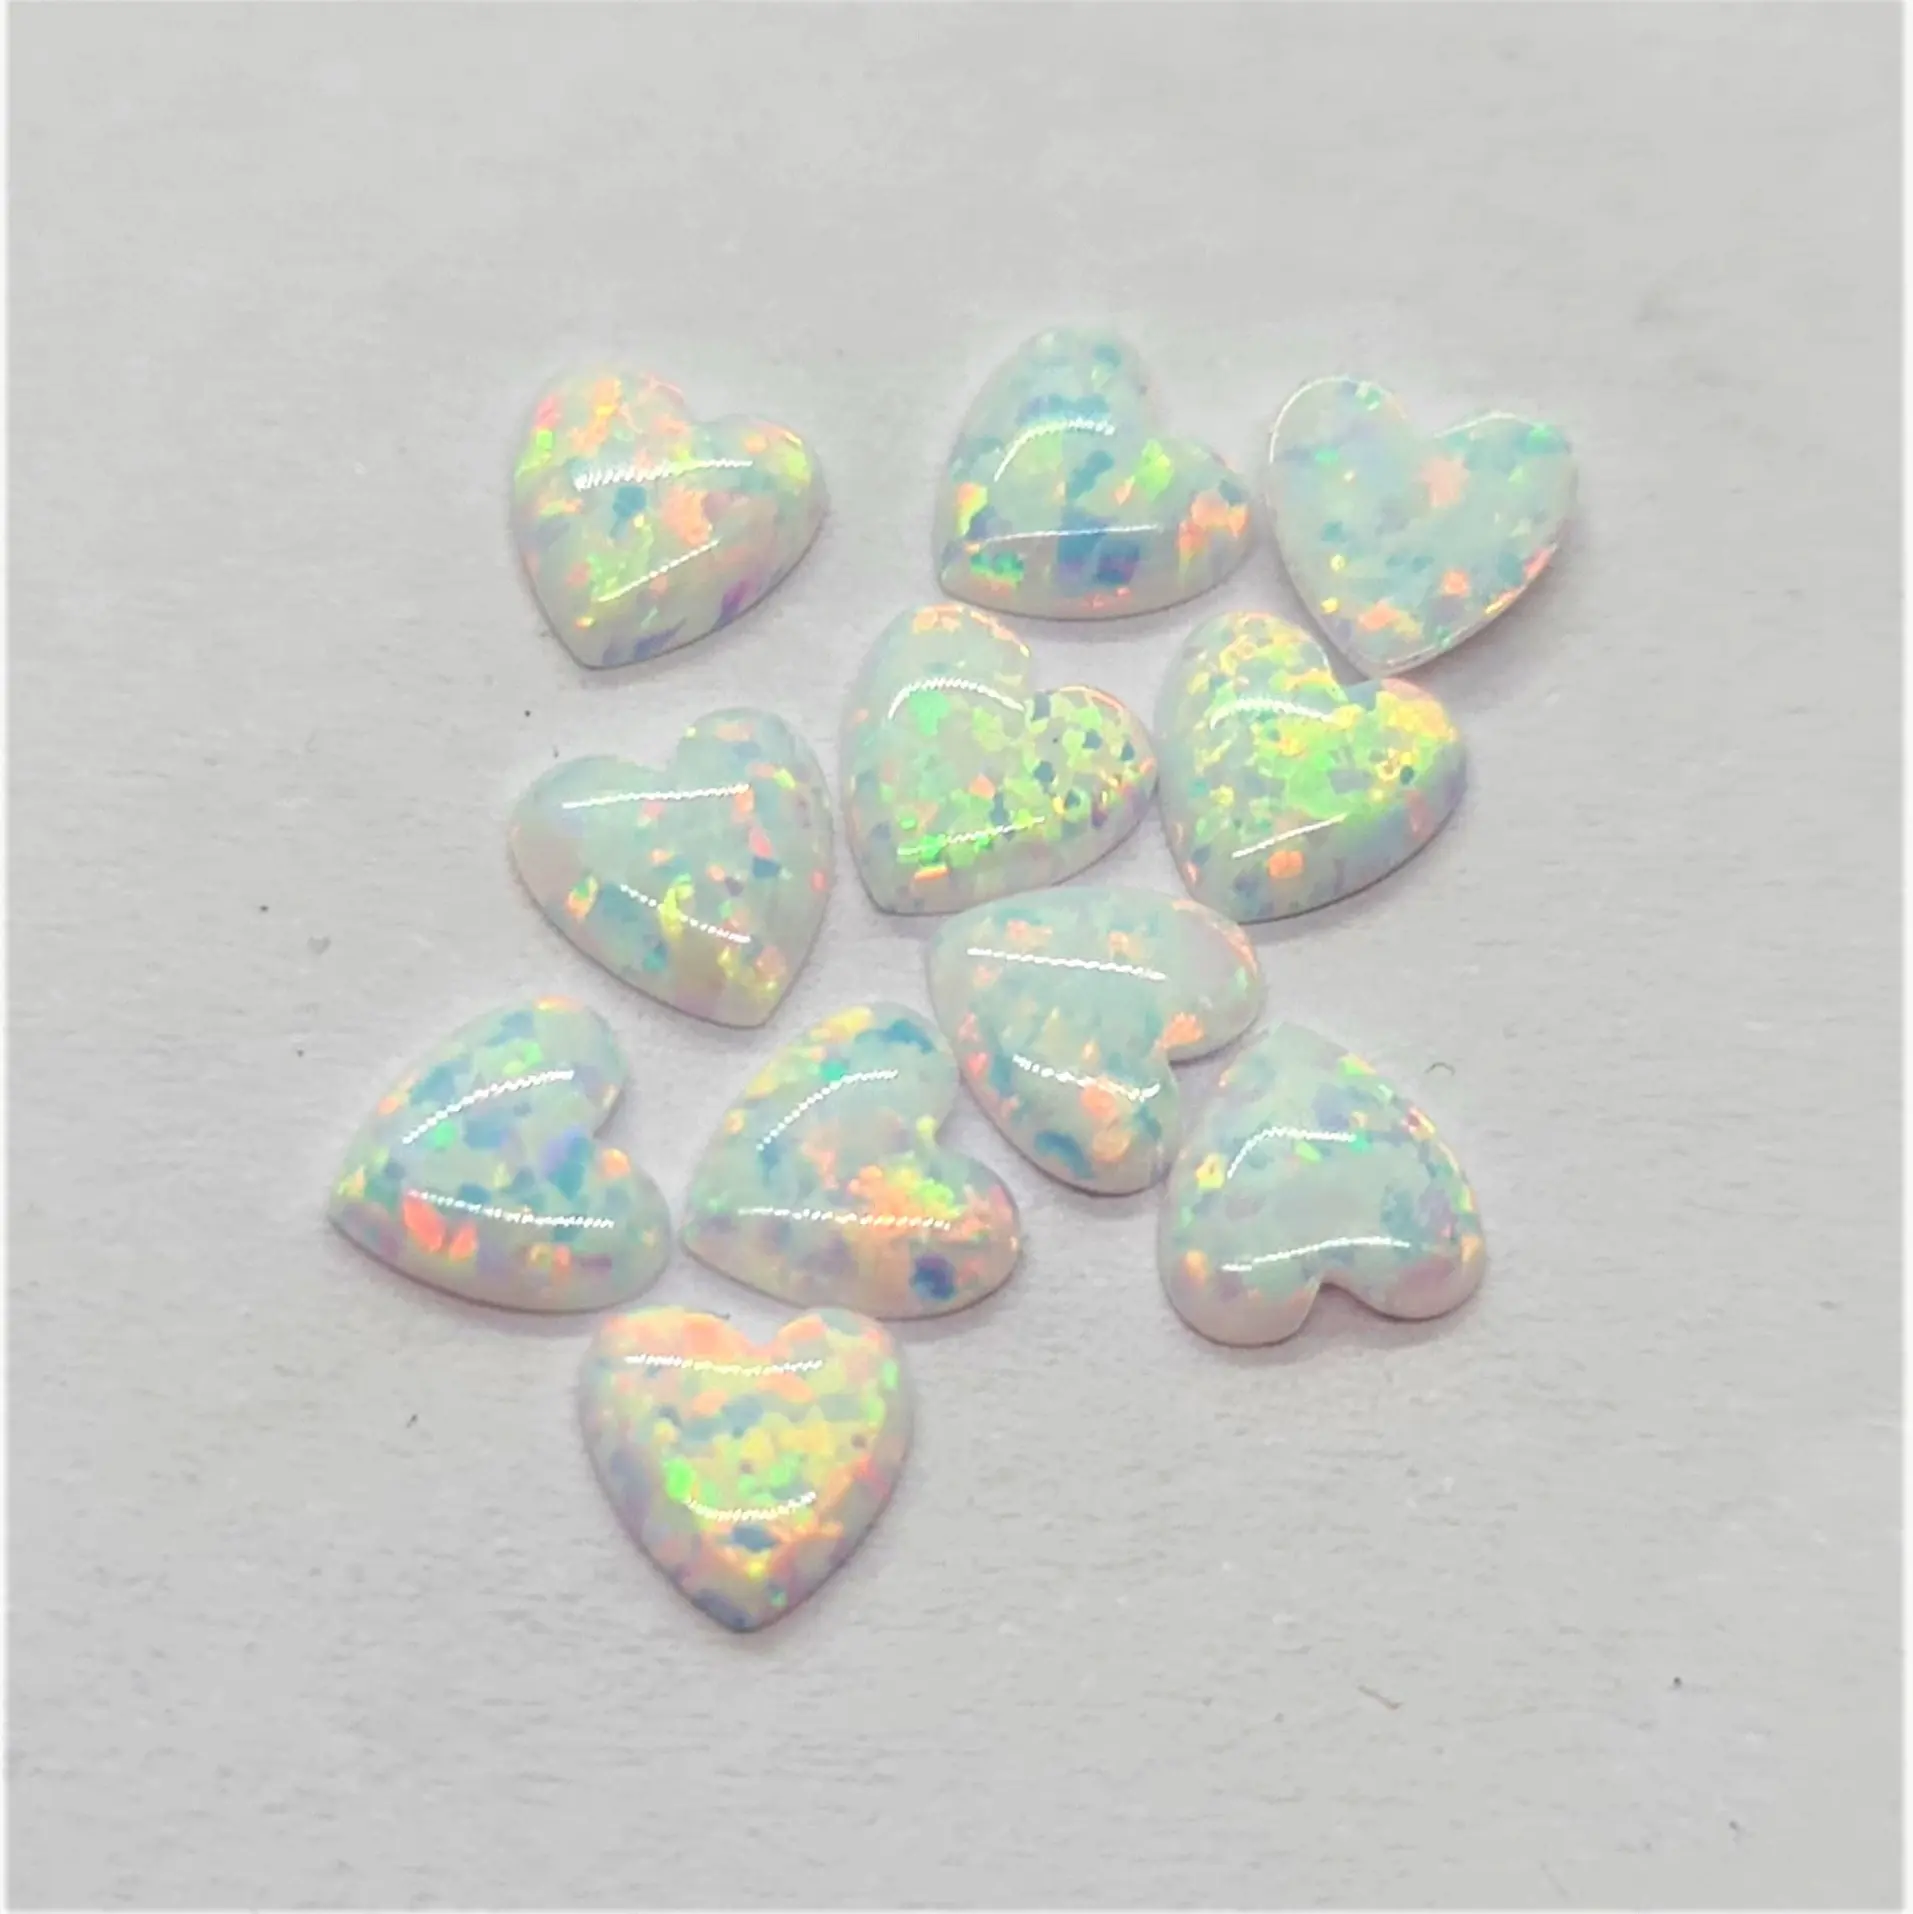 Lose kalibrierte synthetische oder erstellte Opal-Edelsteine, die auf kunden spezifischen Bestellungen in allen Formen in Großhandels preisen geschnitten werden. Diese sind verfügbar I.